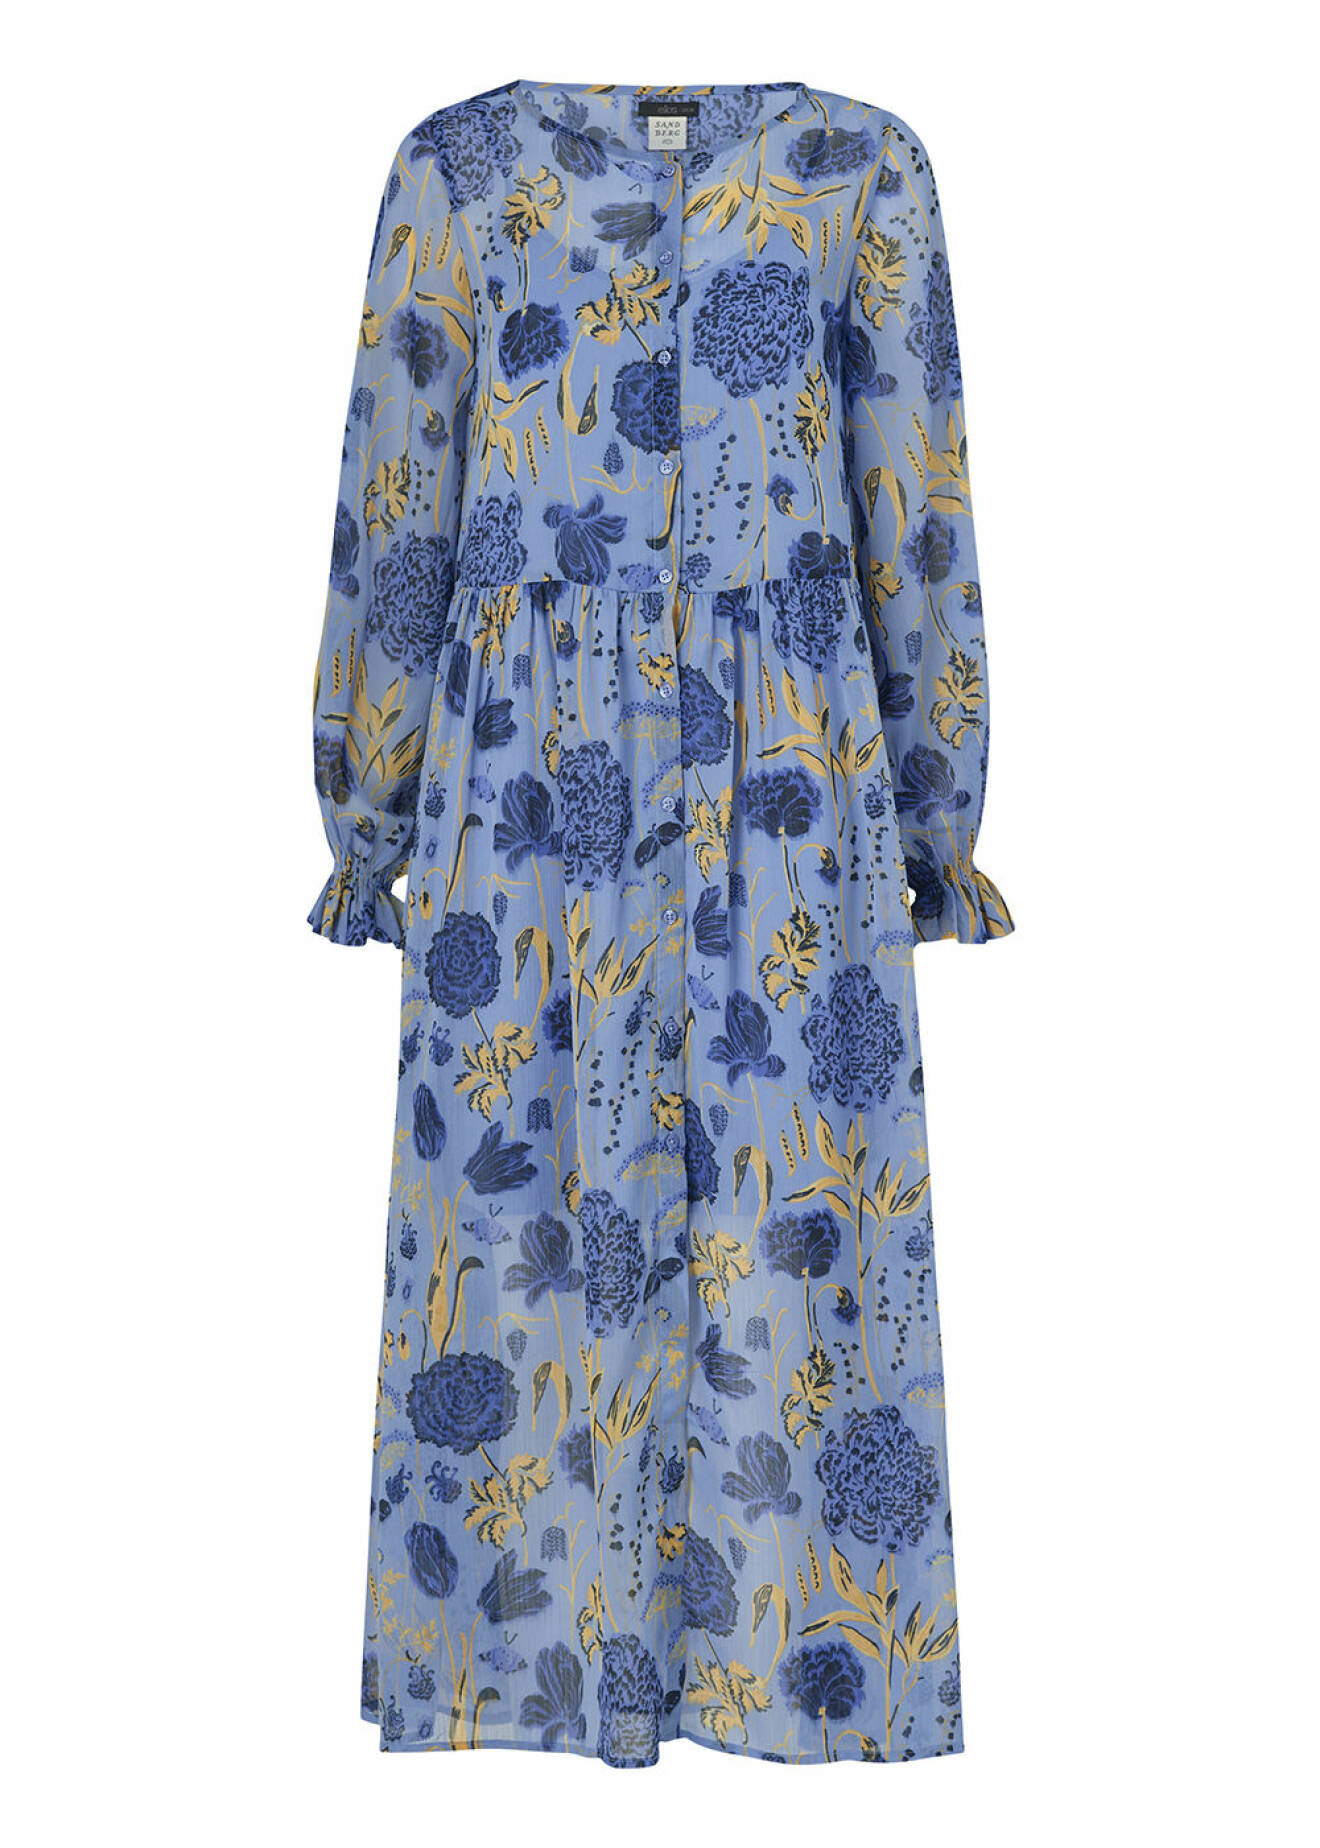 Blåblommig Aurelie-klänning från Ellos x Sandberg Wallpaper